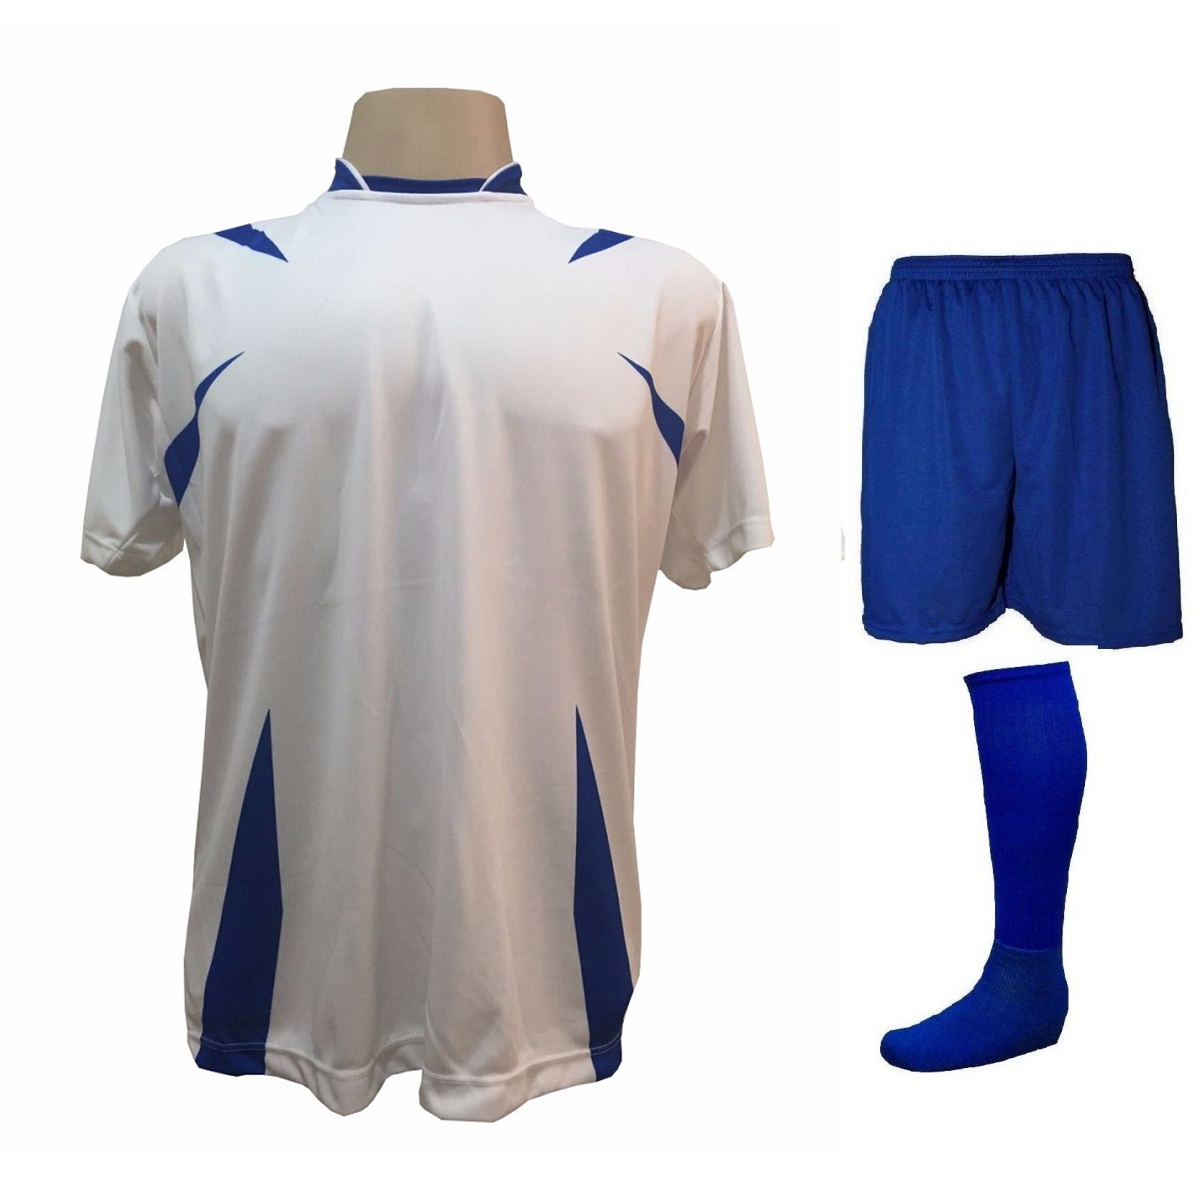 Uniforme Esportivo Completo modelo Palermo 14+1 (14 camisas Branco/Royal + 14 calções Madrid Royal + 14 pares de meiões Royal + 1 conjunto de goleiro) + Brindes